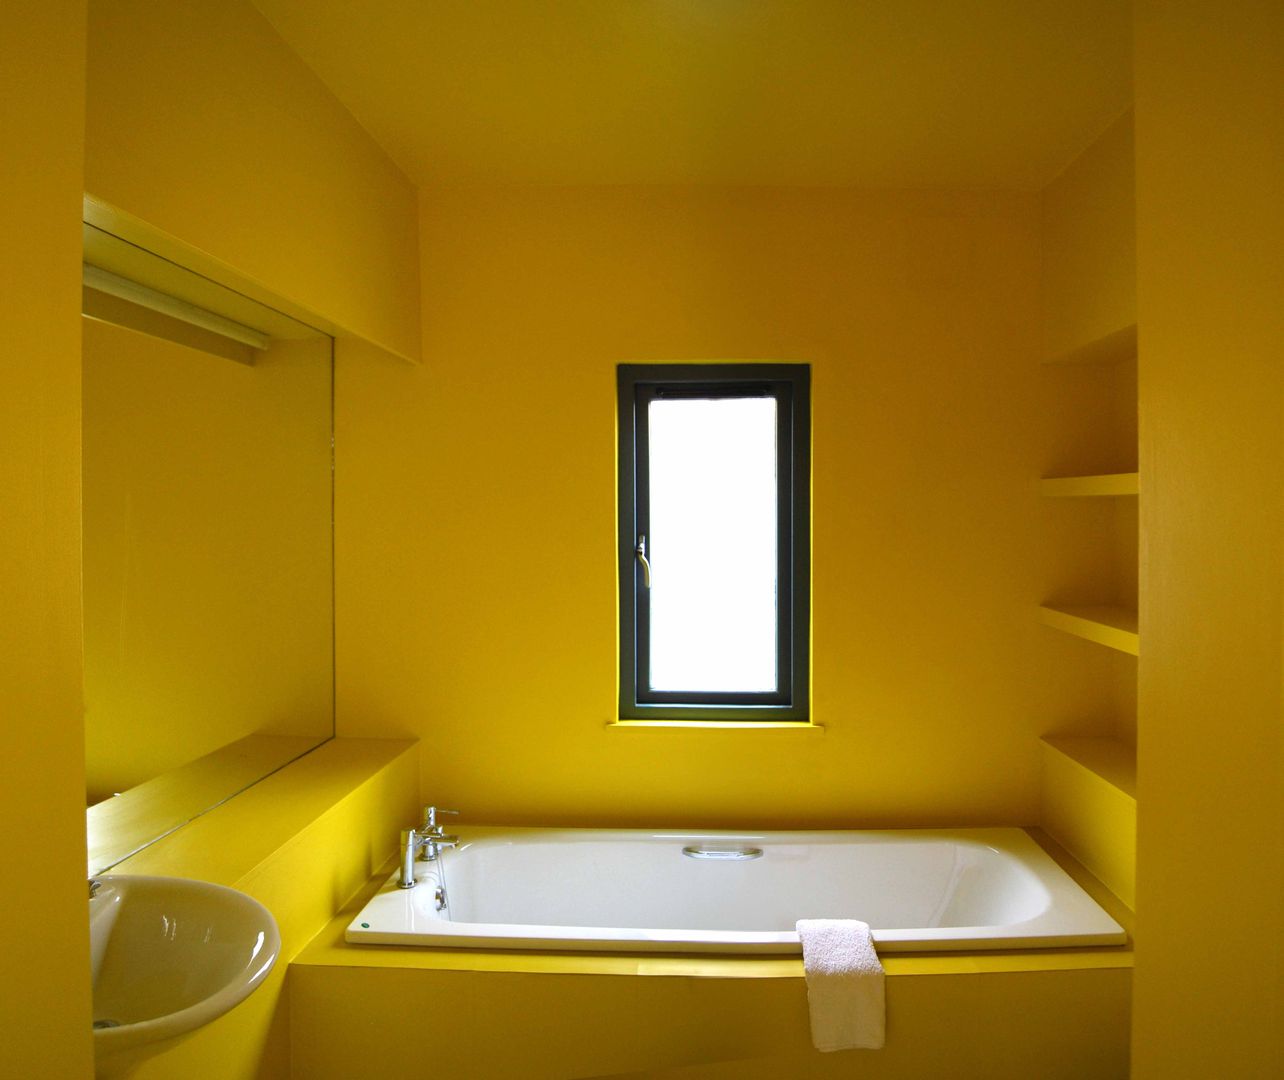 The Yellow Room ROEWUarchitecture Casas de banho modernas Compósito de madeira e plástico yellow,bathroom,mood